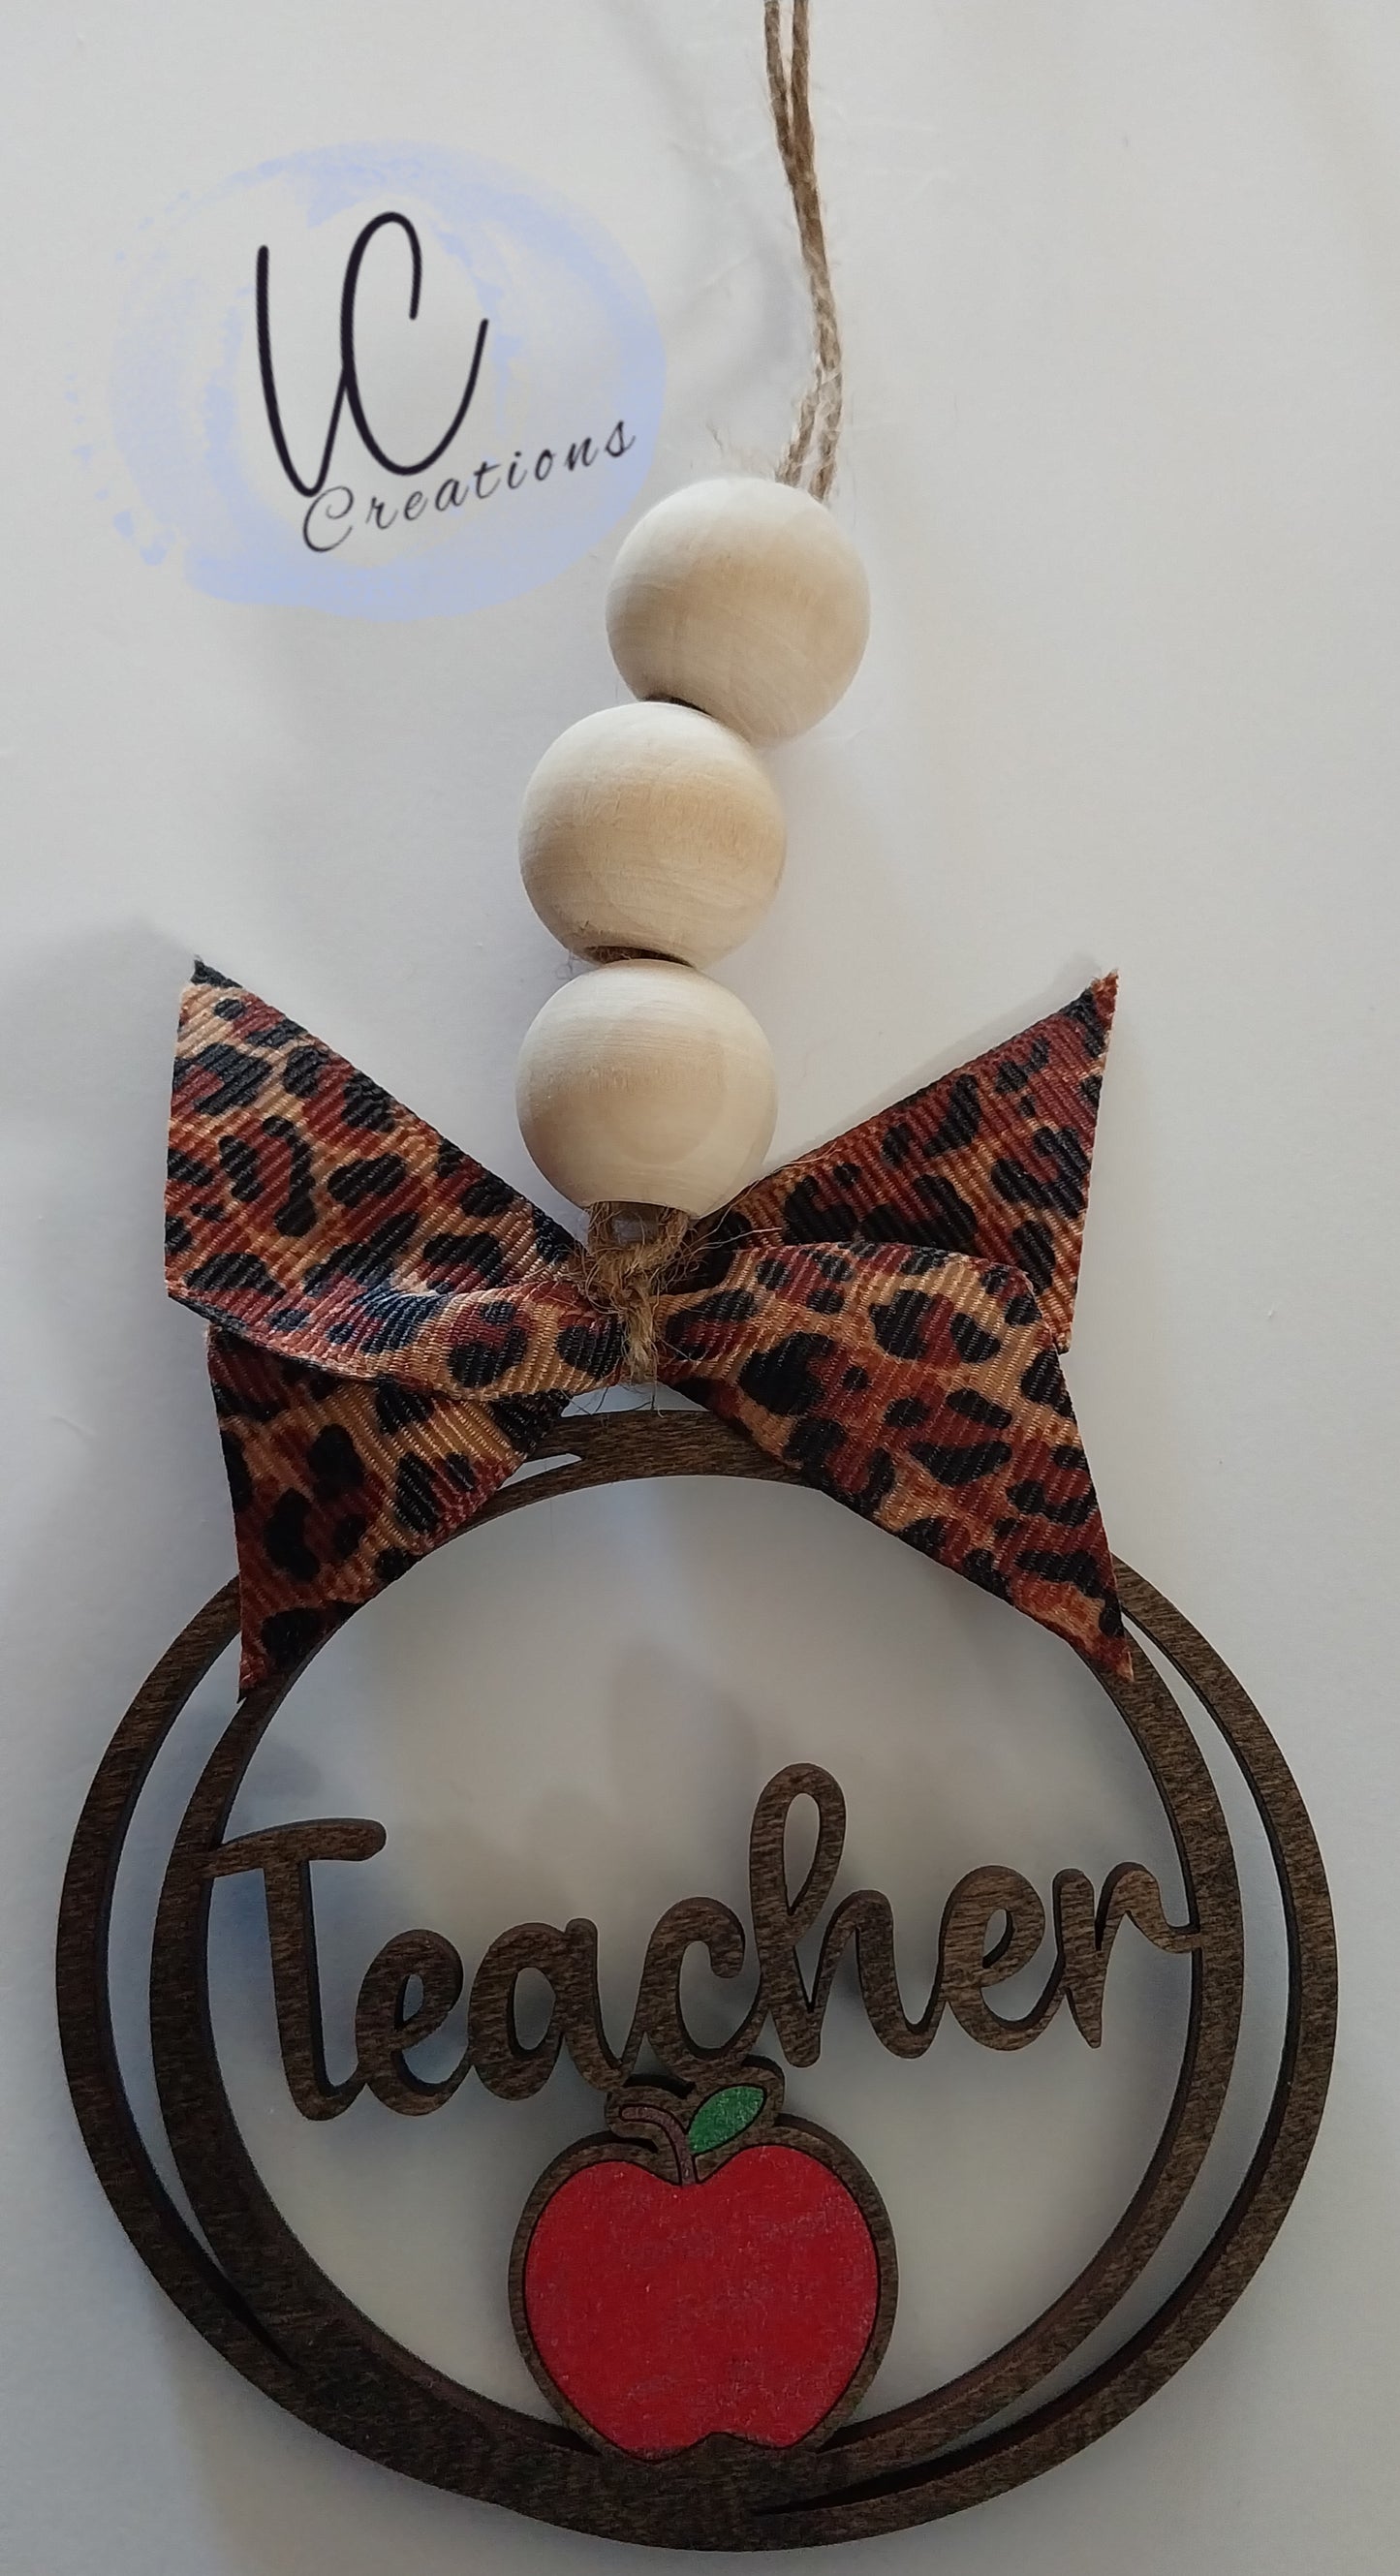 Teacher Bundle #1